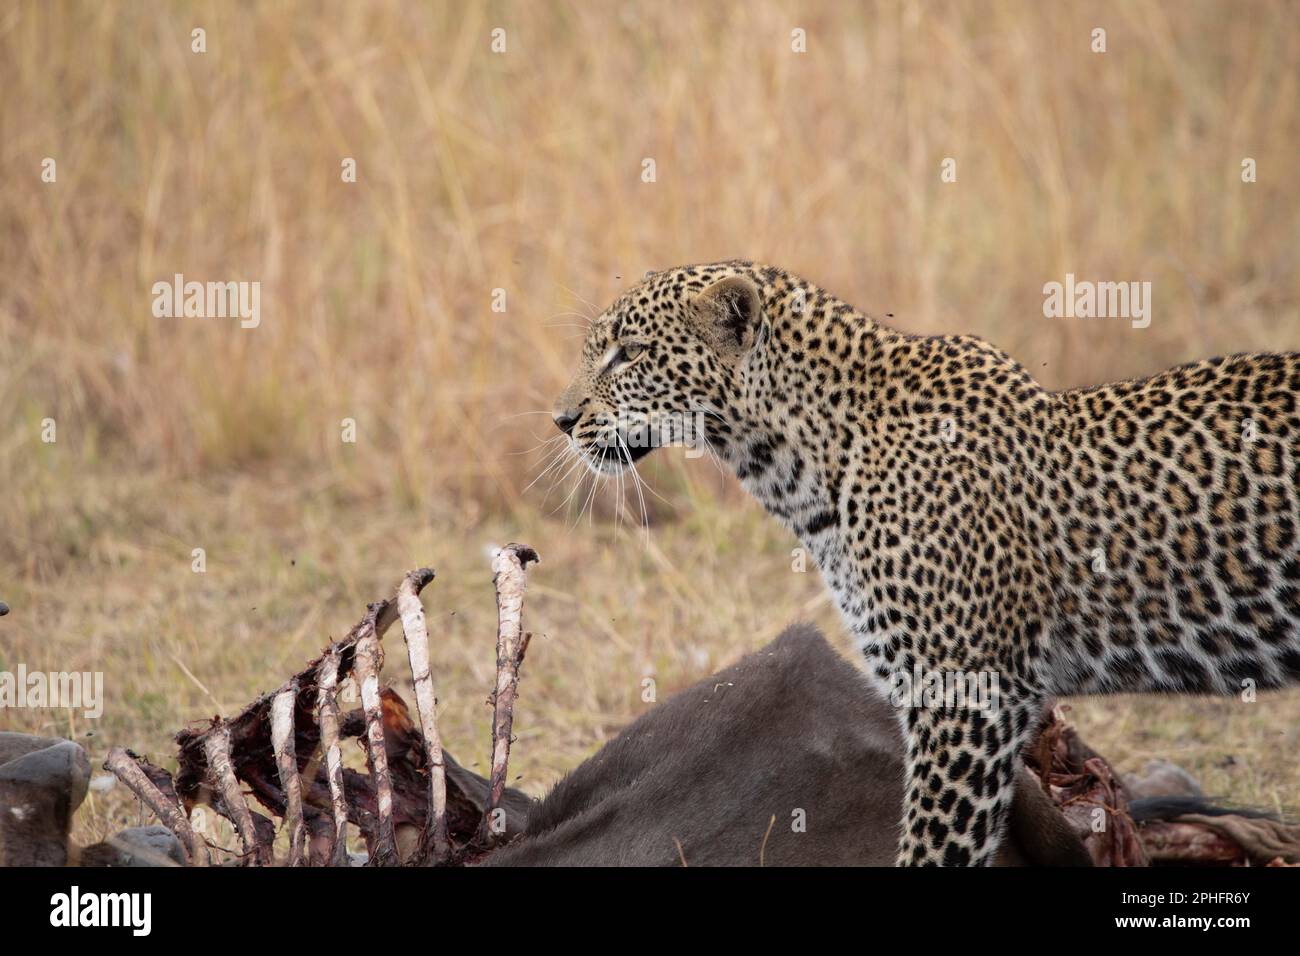 Per il pranzo. Kenya: QUESTE immagini COMICHE mostrano un leopardo in un punto di fastidio mentre i suoi occhi si gonfiavano mentre scuoteva le mosche pesky come ha cercato di godere Foto Stock